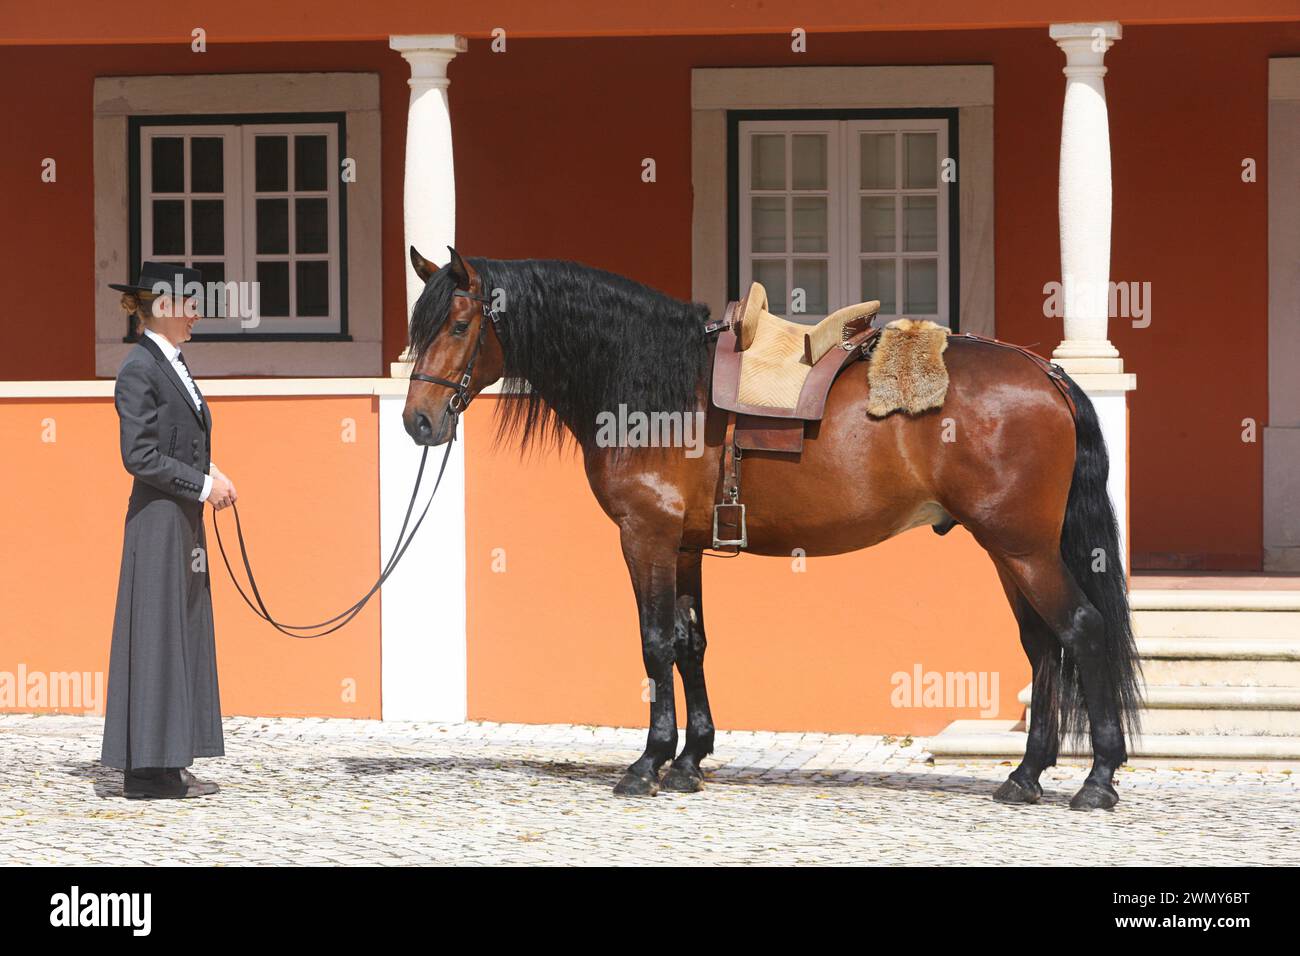 Lusitano. L'étalon de baie Beruc se tient avec une selle traditionnelle et une dame en robe d'équitation dans la cour du haras Quinta da Ferraria au Portugal Banque D'Images